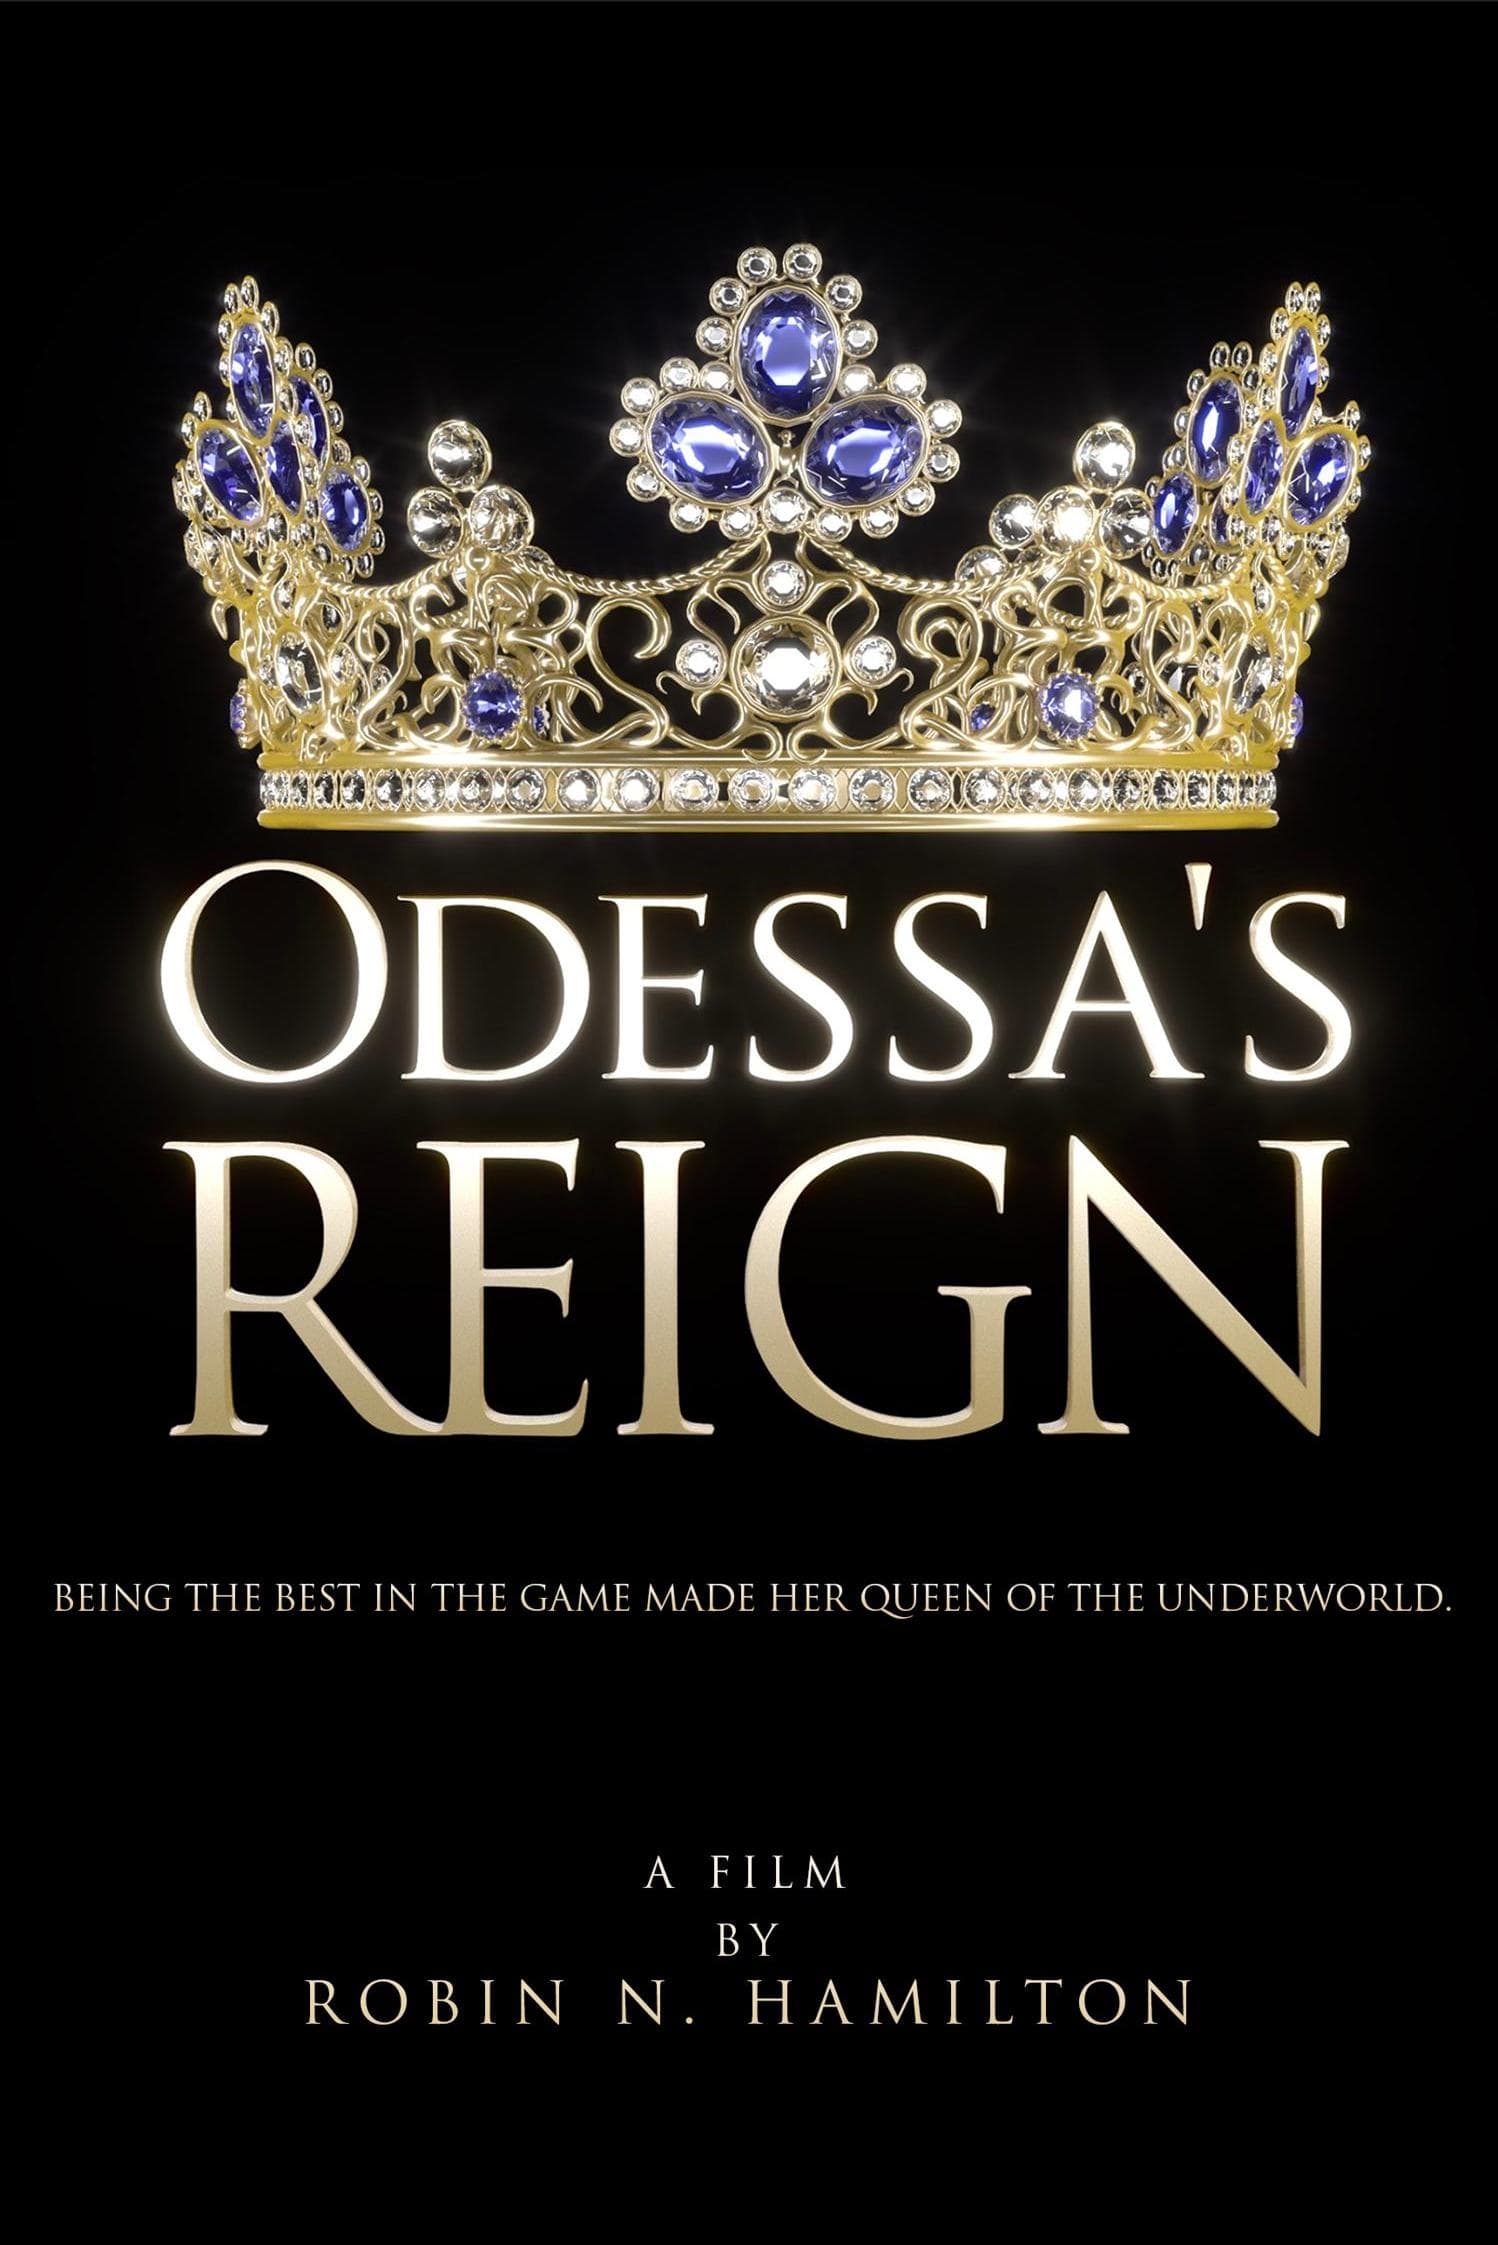 Odessa's Reign